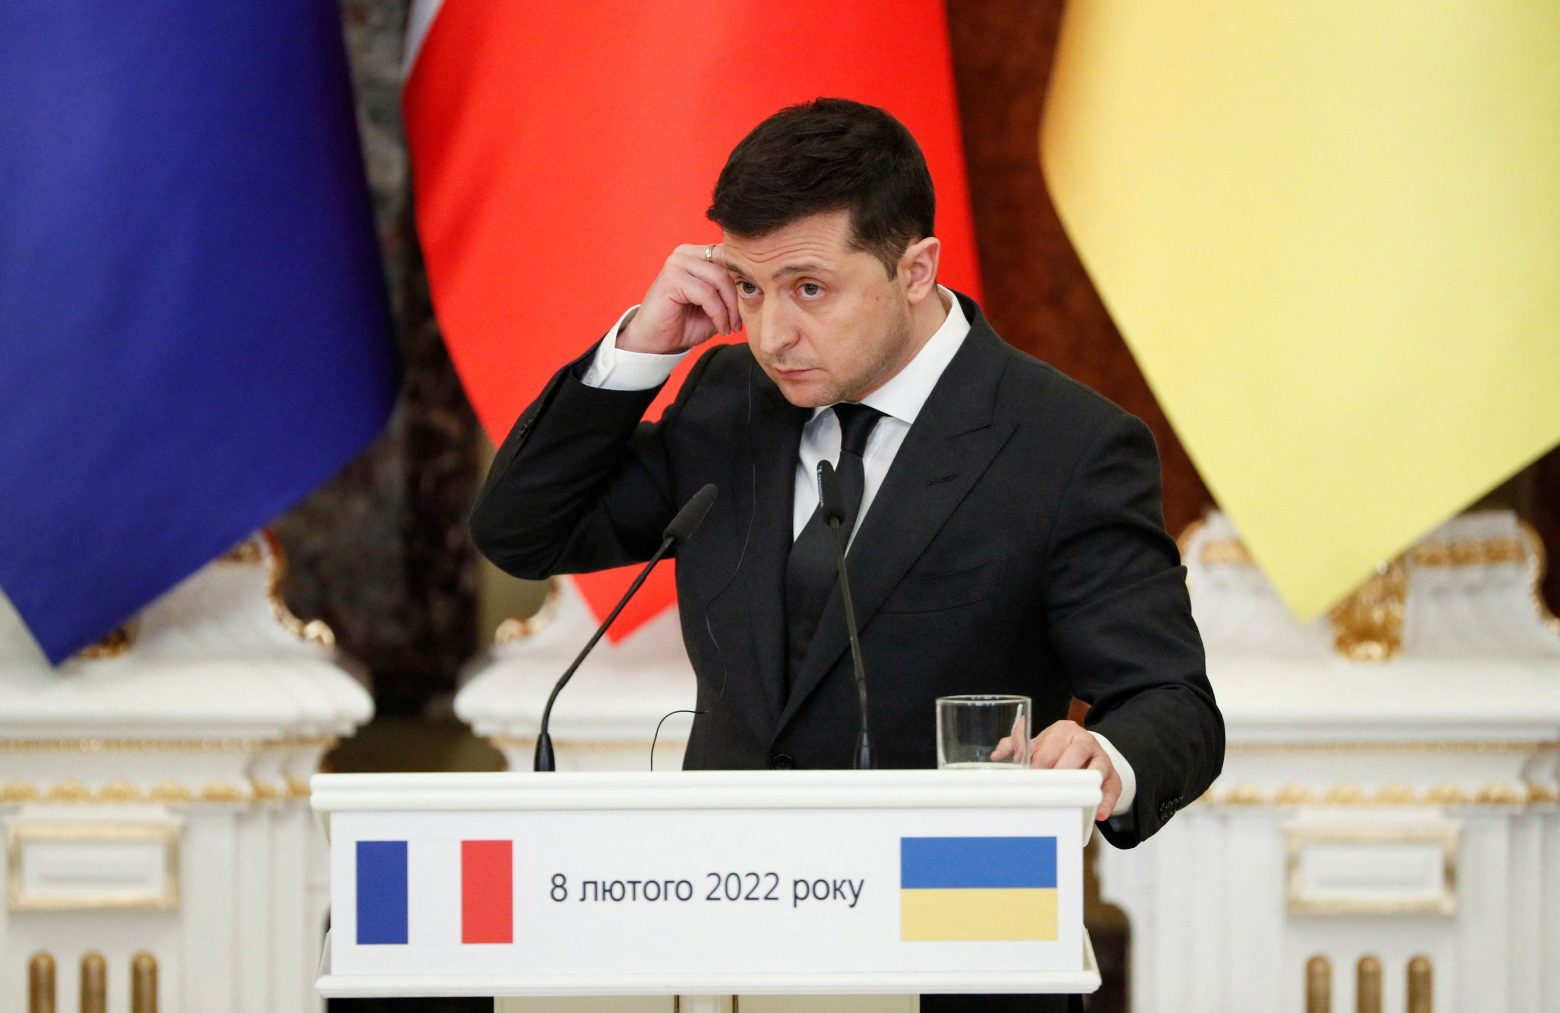 Ζελένσκι: Η Ουκρανία θέλει να δει βήματα αποκλιμάκωσης από τη Ρωσία